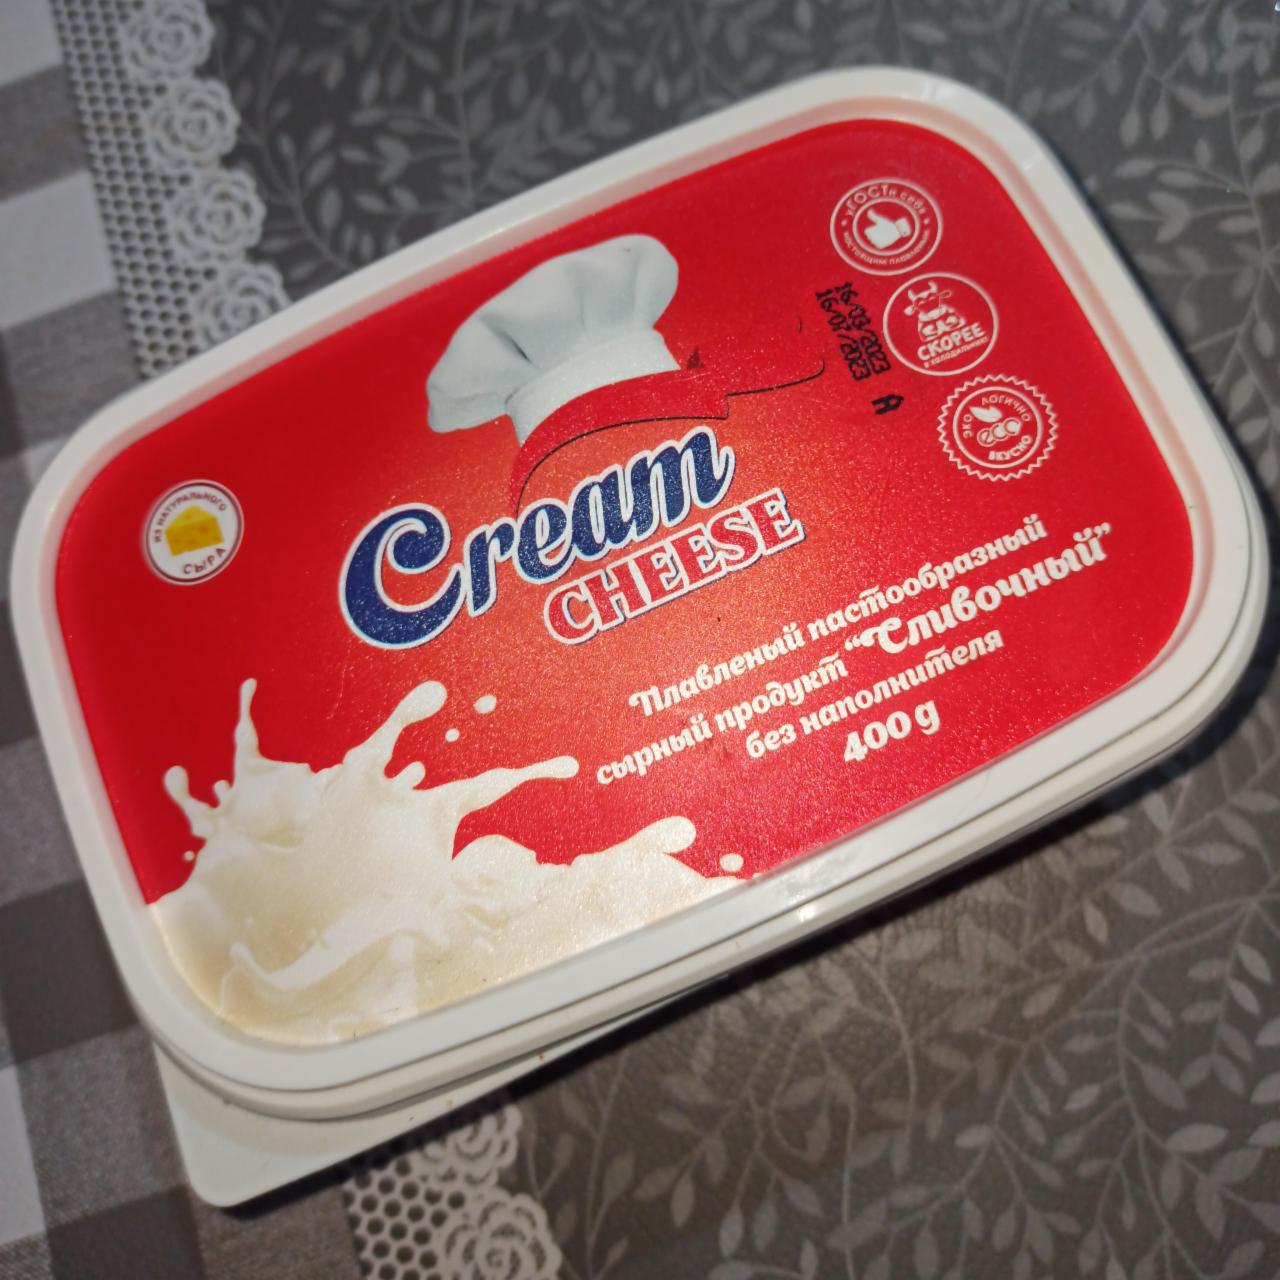 Фото - Плавленый сыр сливочный Cream cheese